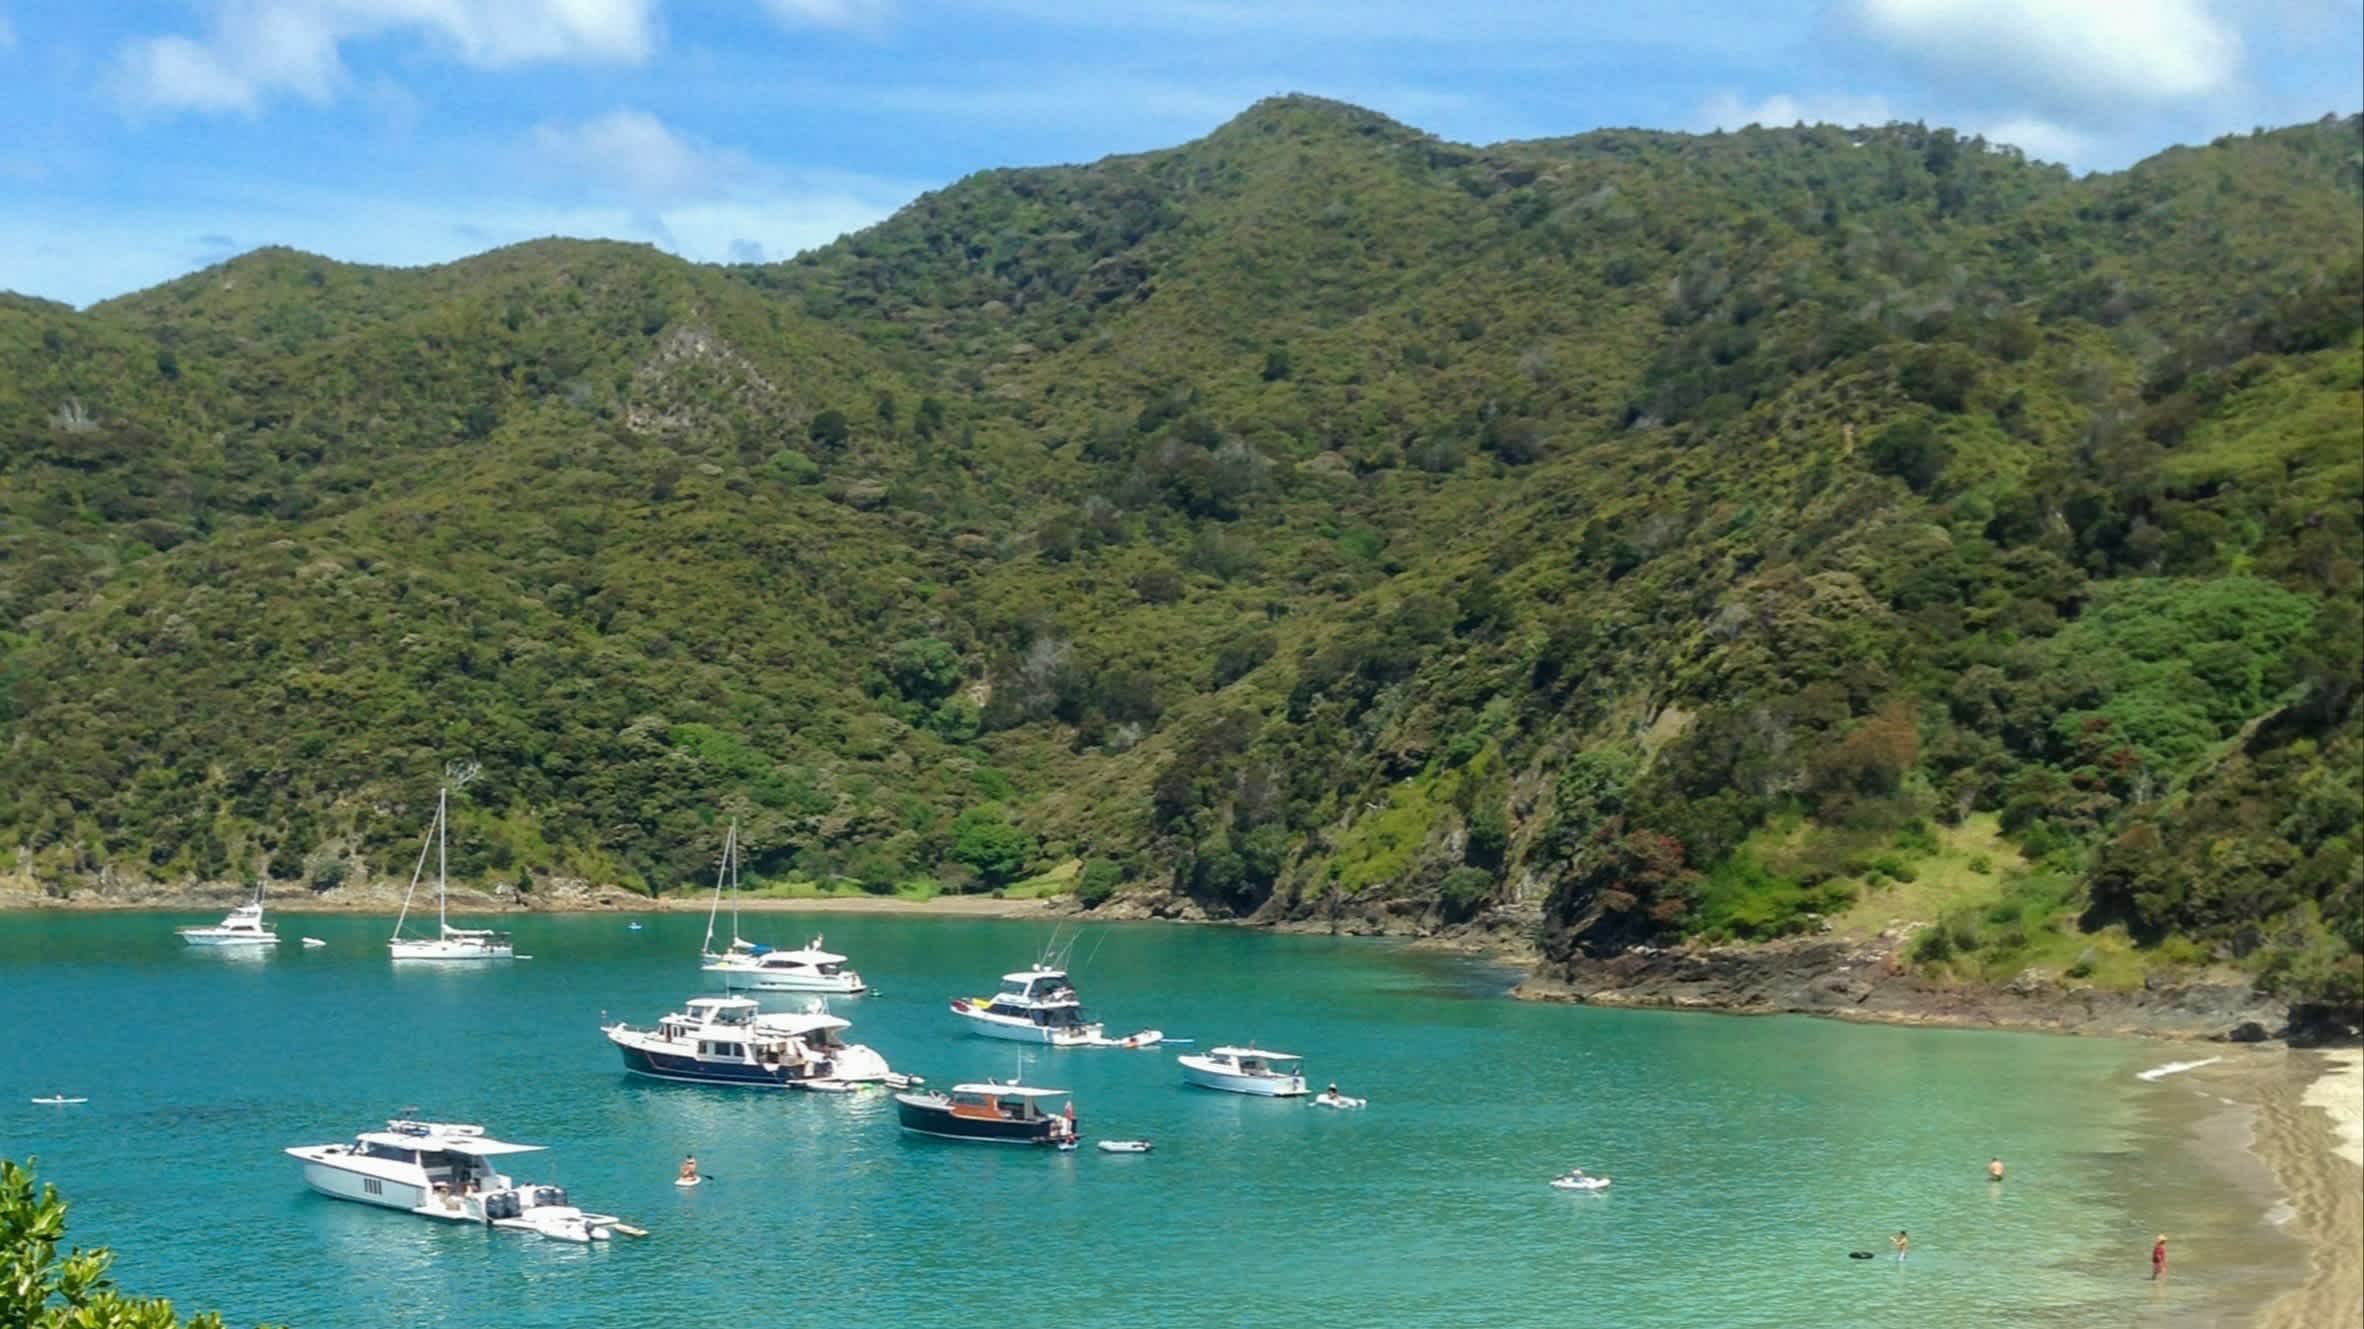 Blick auf die Bucht Oke Bay, Bay of Islands, Neuseeland, bei Sonnenschein und mit Booten im Wasser sowie grünen Hügeln und dem türkisfarbenem Meer.

